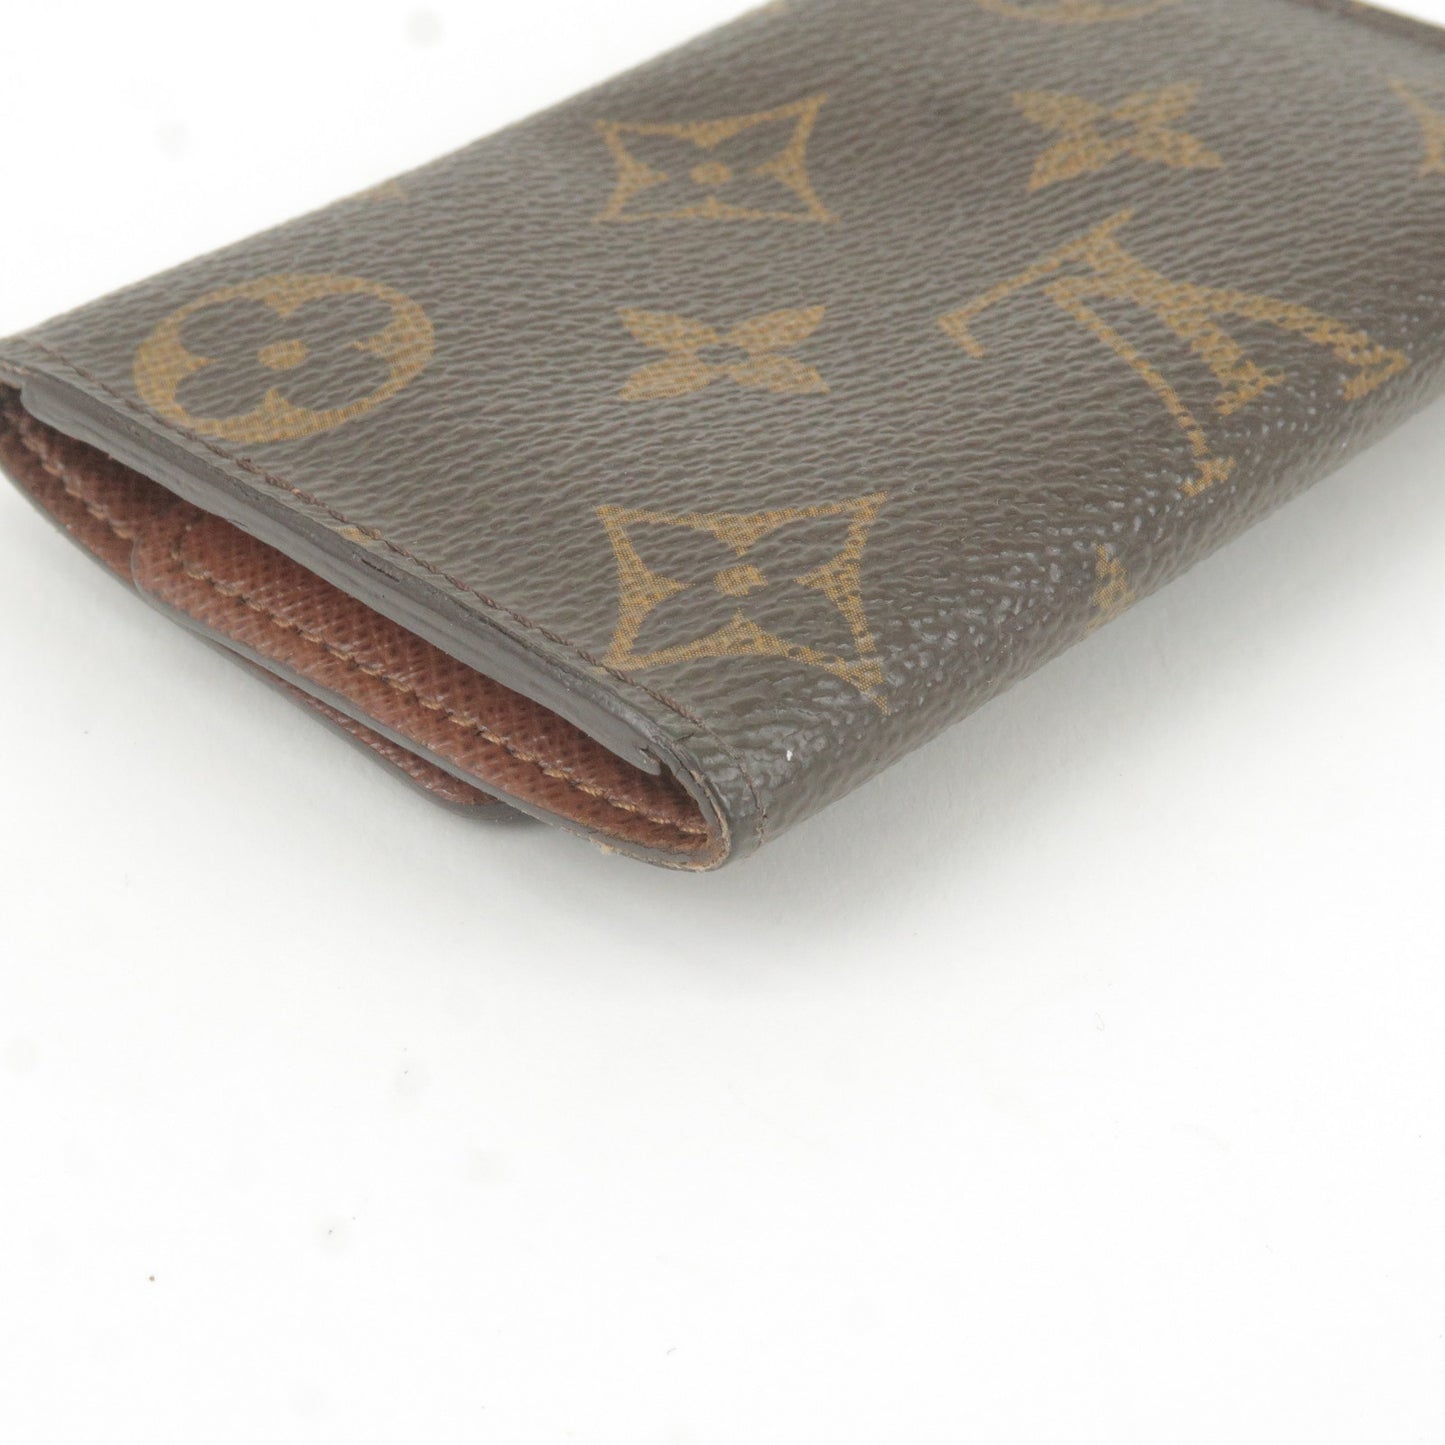 Shop Louis Vuitton MULTICLES 6 key holder (M62630) by Leeway